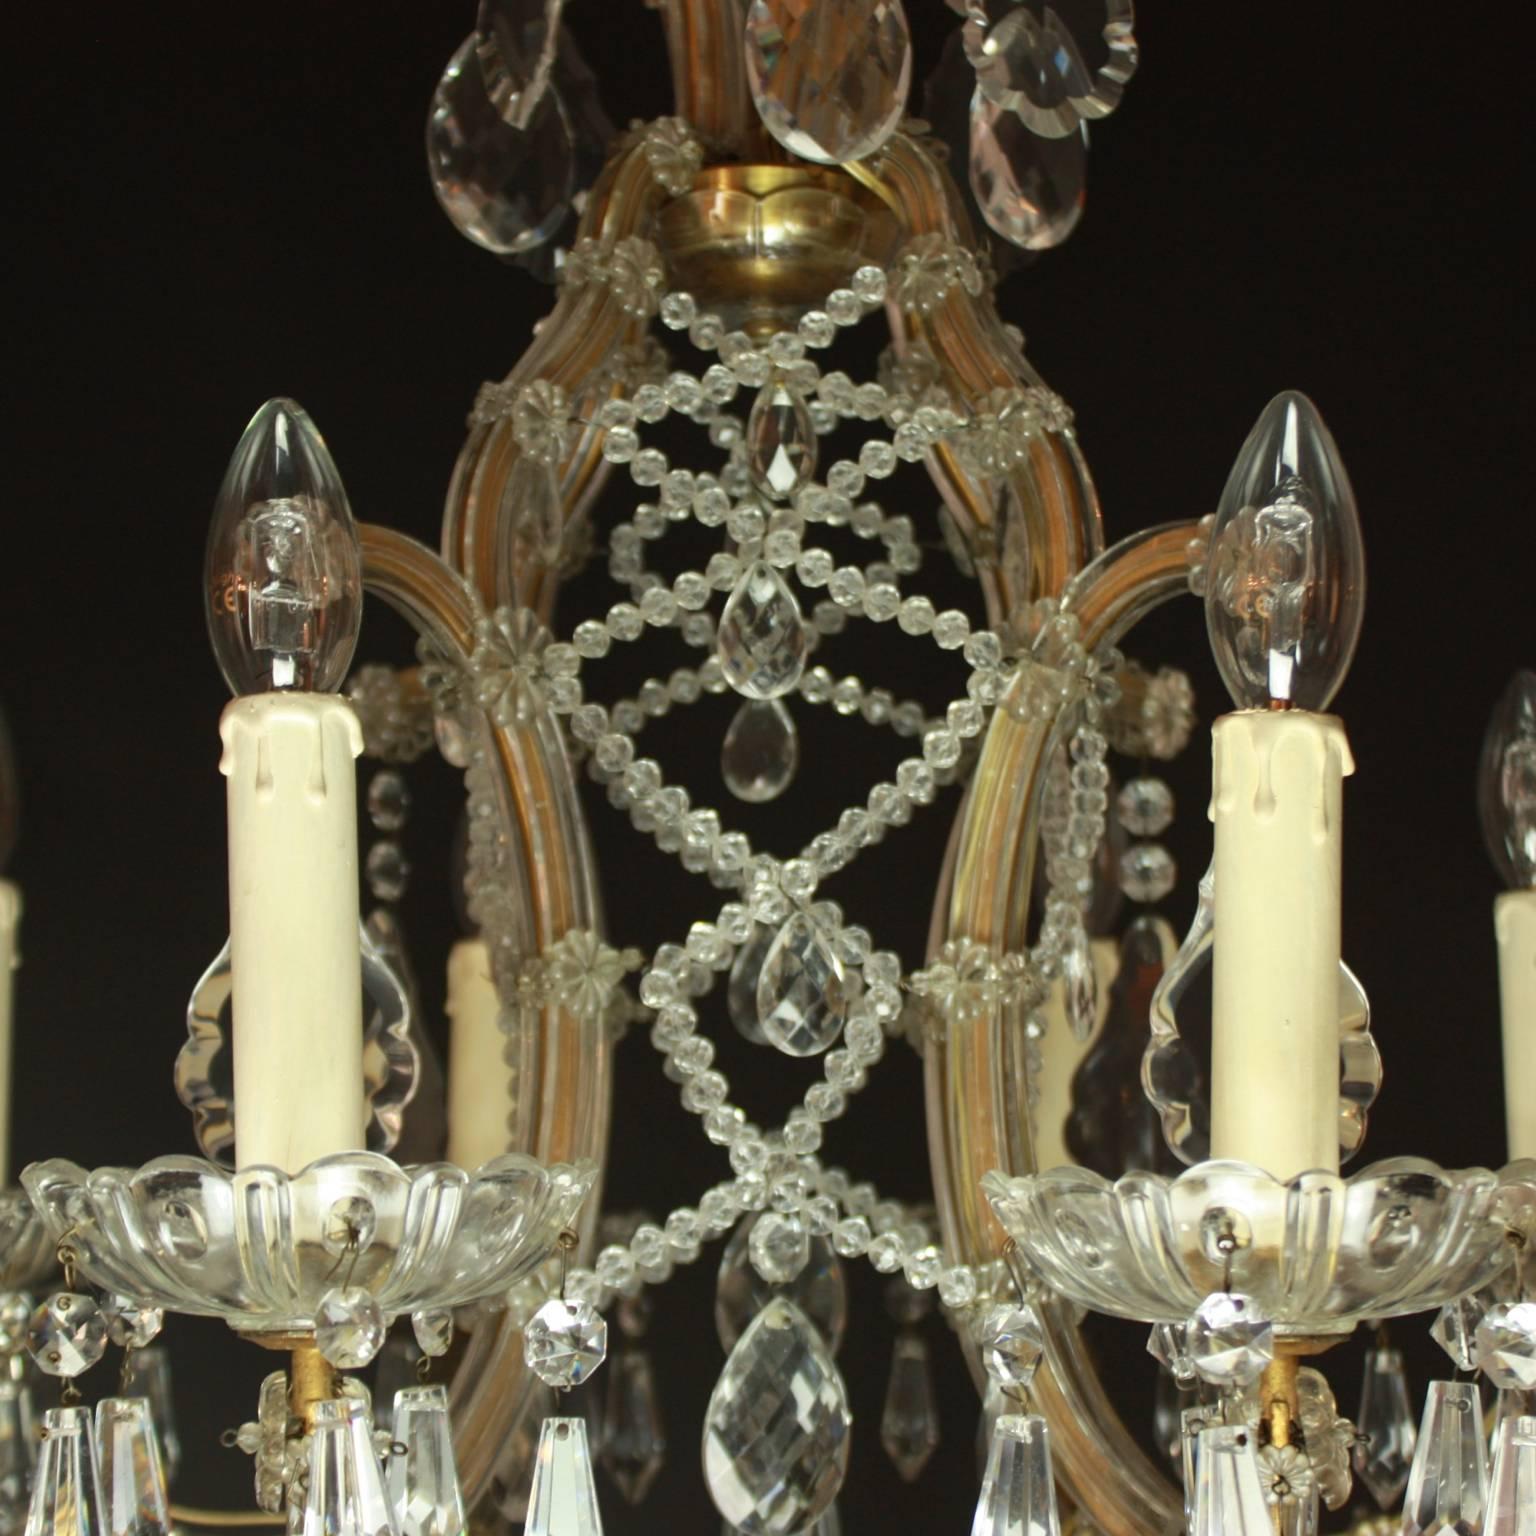 1910 chandelier